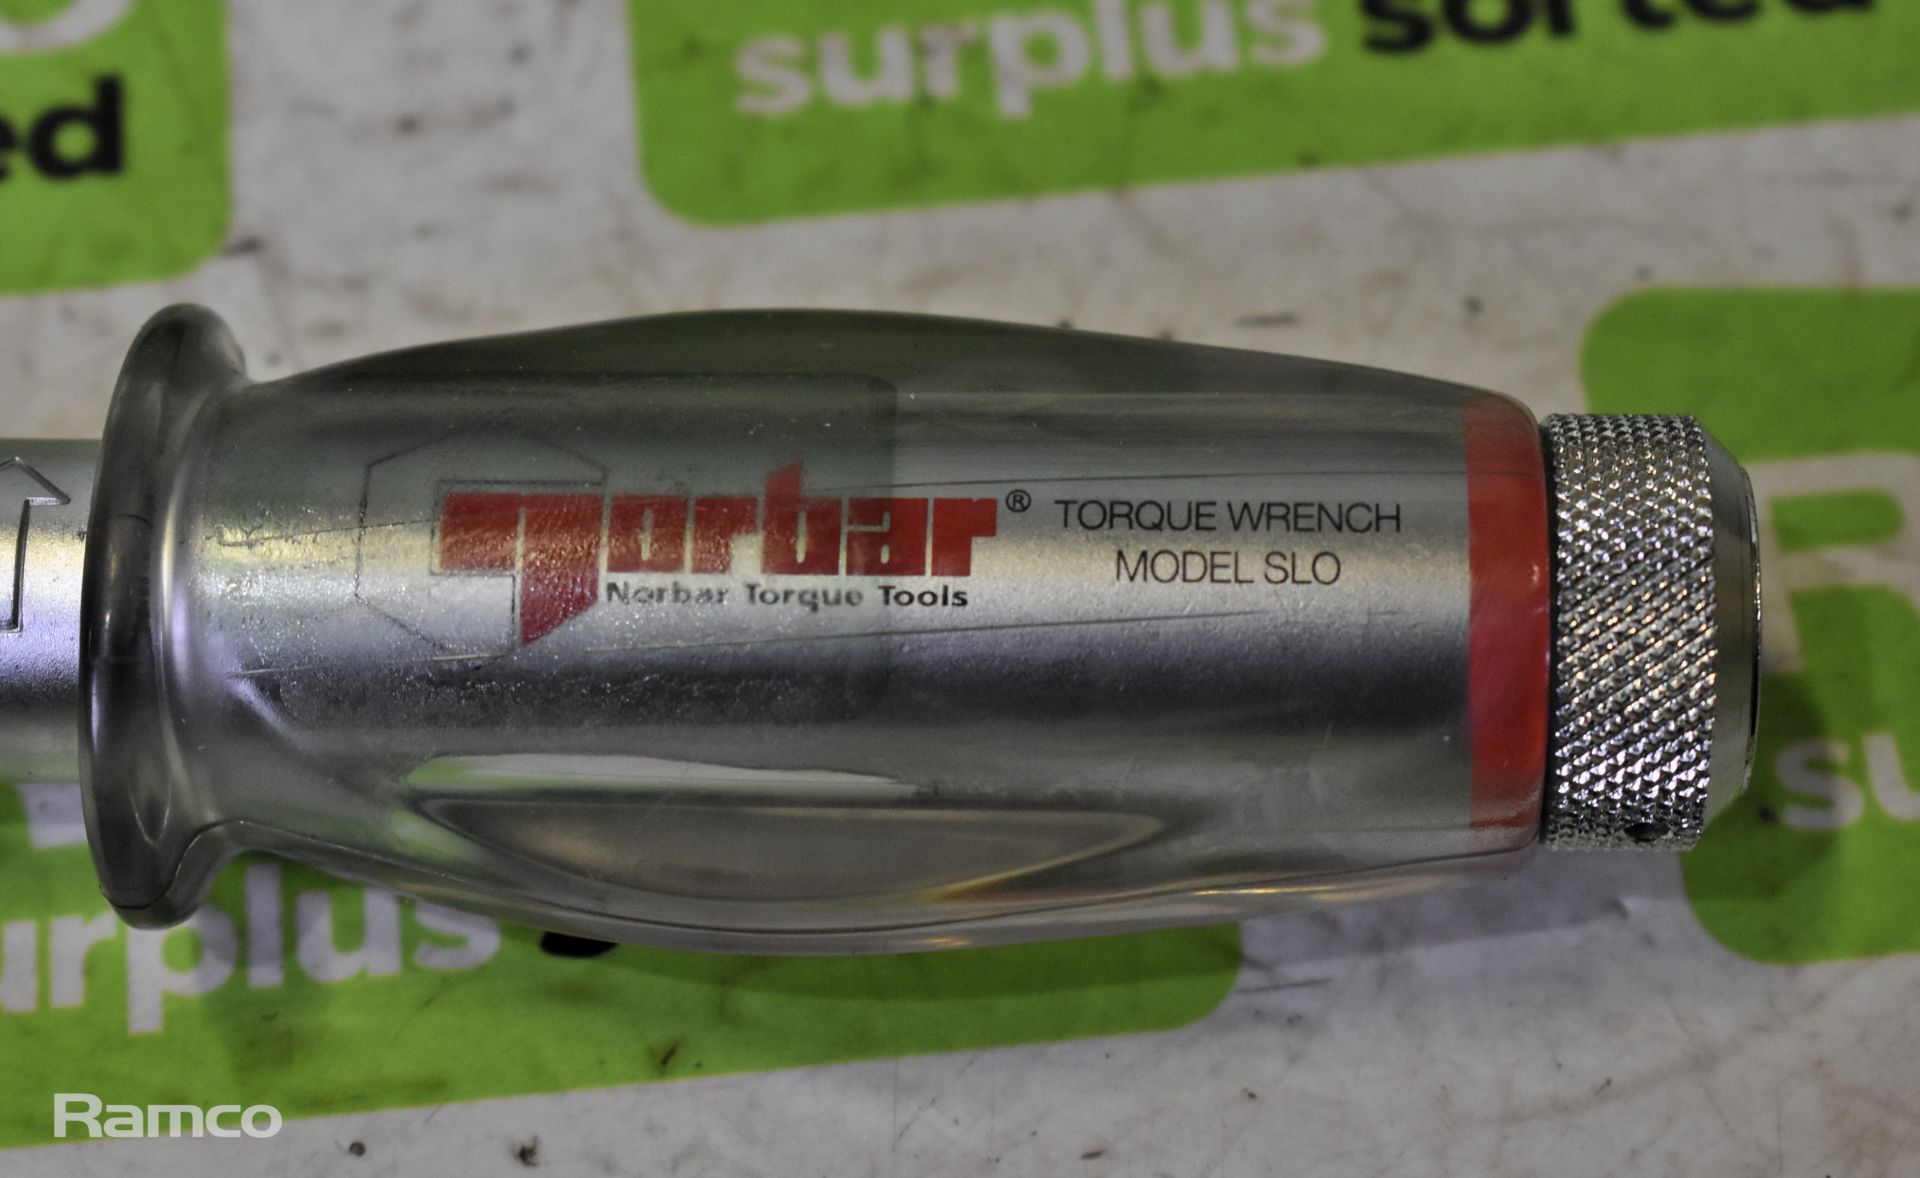 Norbar torque wrench handle - model SLO & Norbar torque wrench - model SLO - Bild 2 aus 3